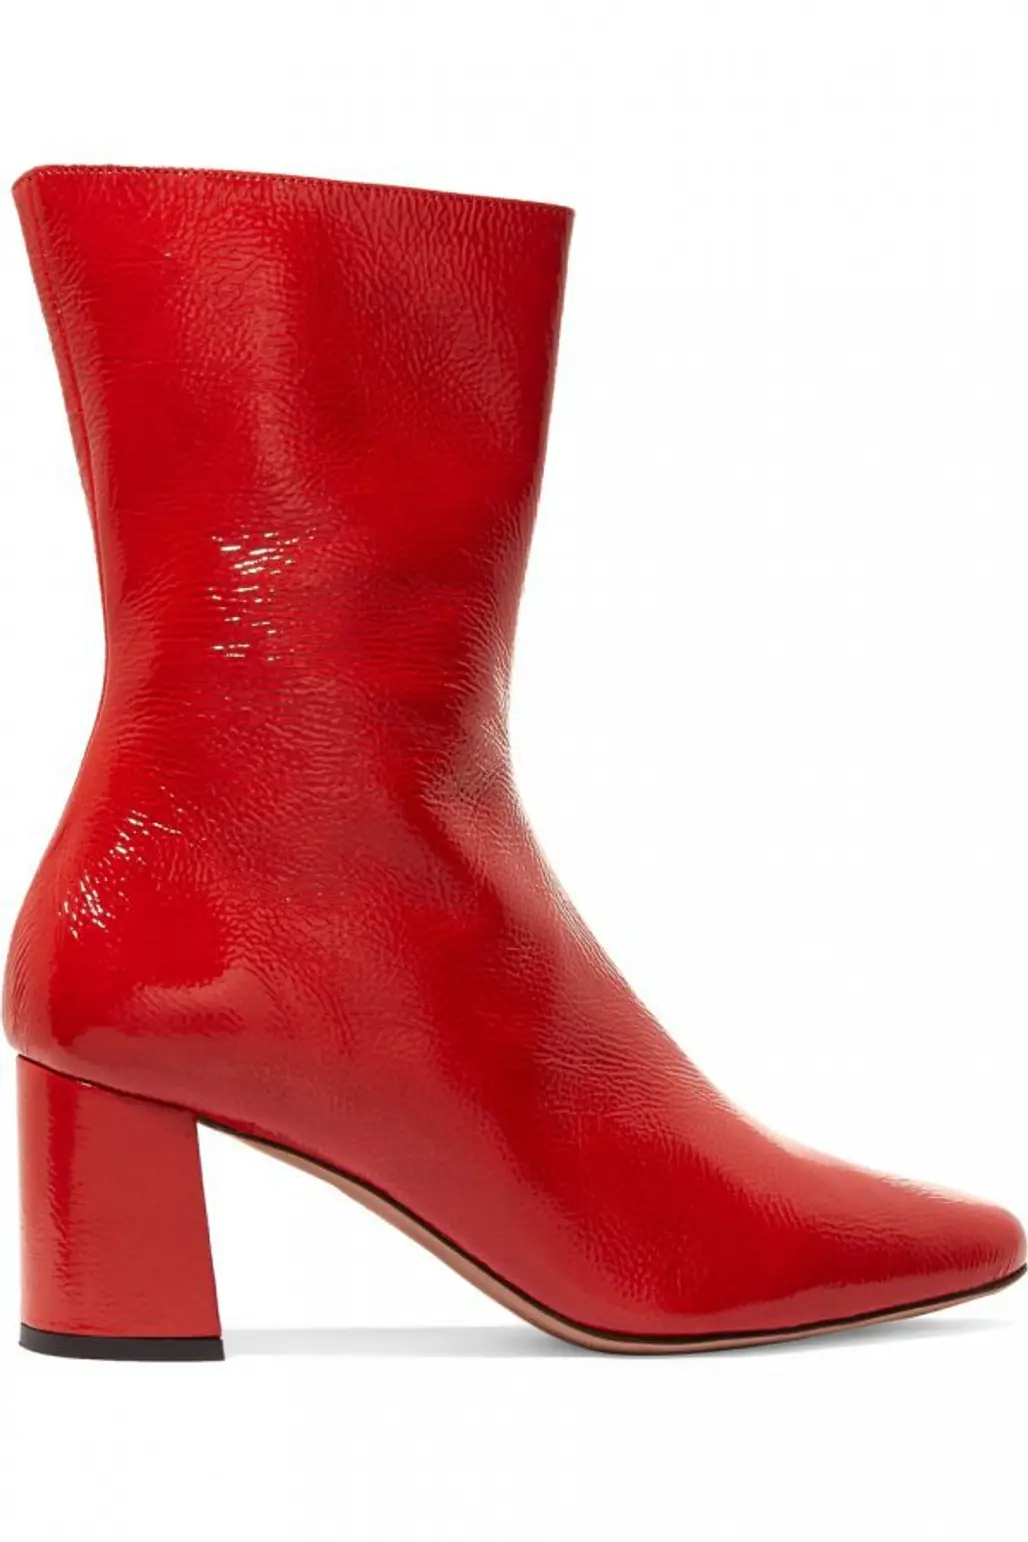 footwear, red, boot, high heeled footwear, shoe,